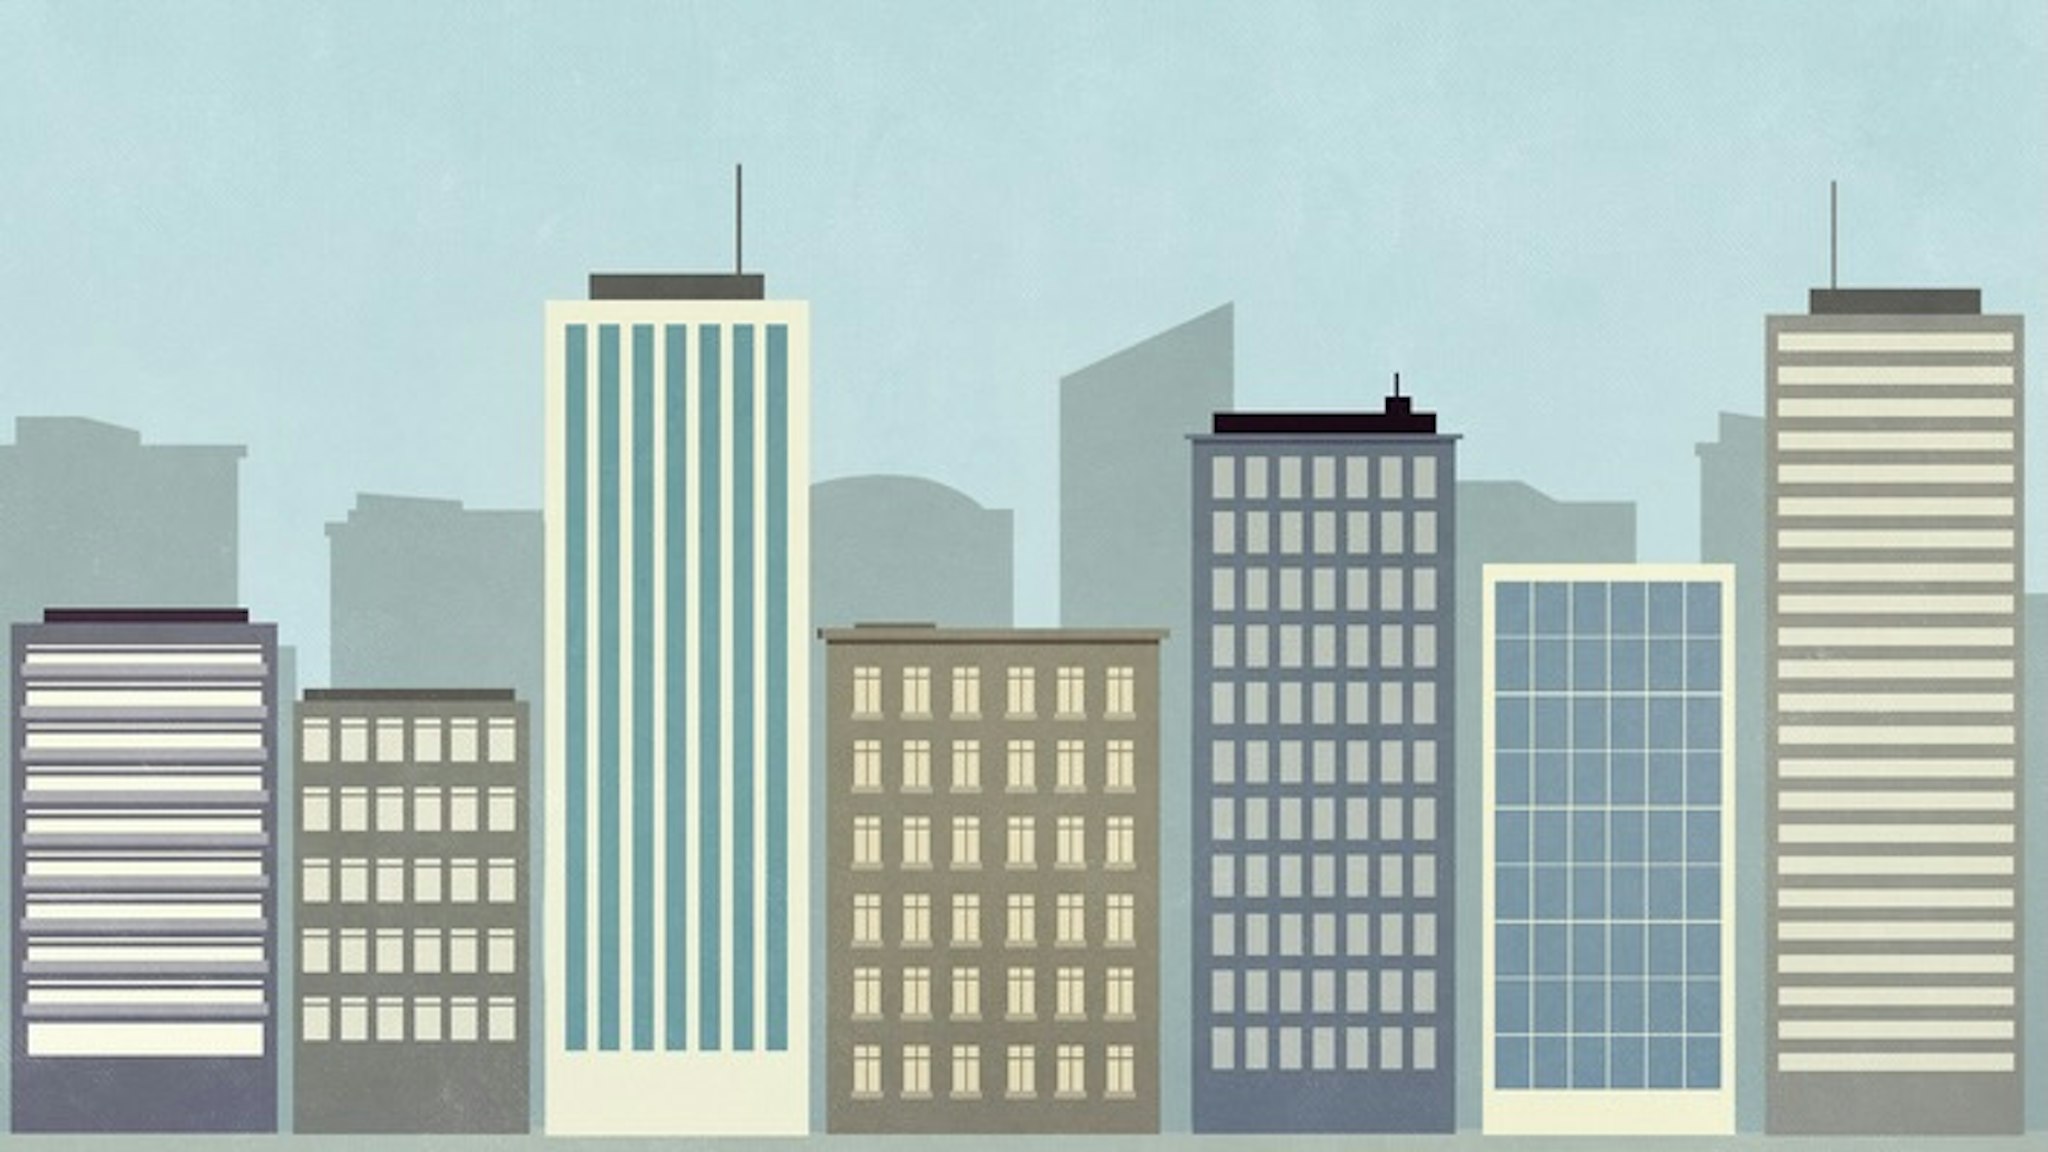 Cityscape of skyscraper buildings - stock illustration